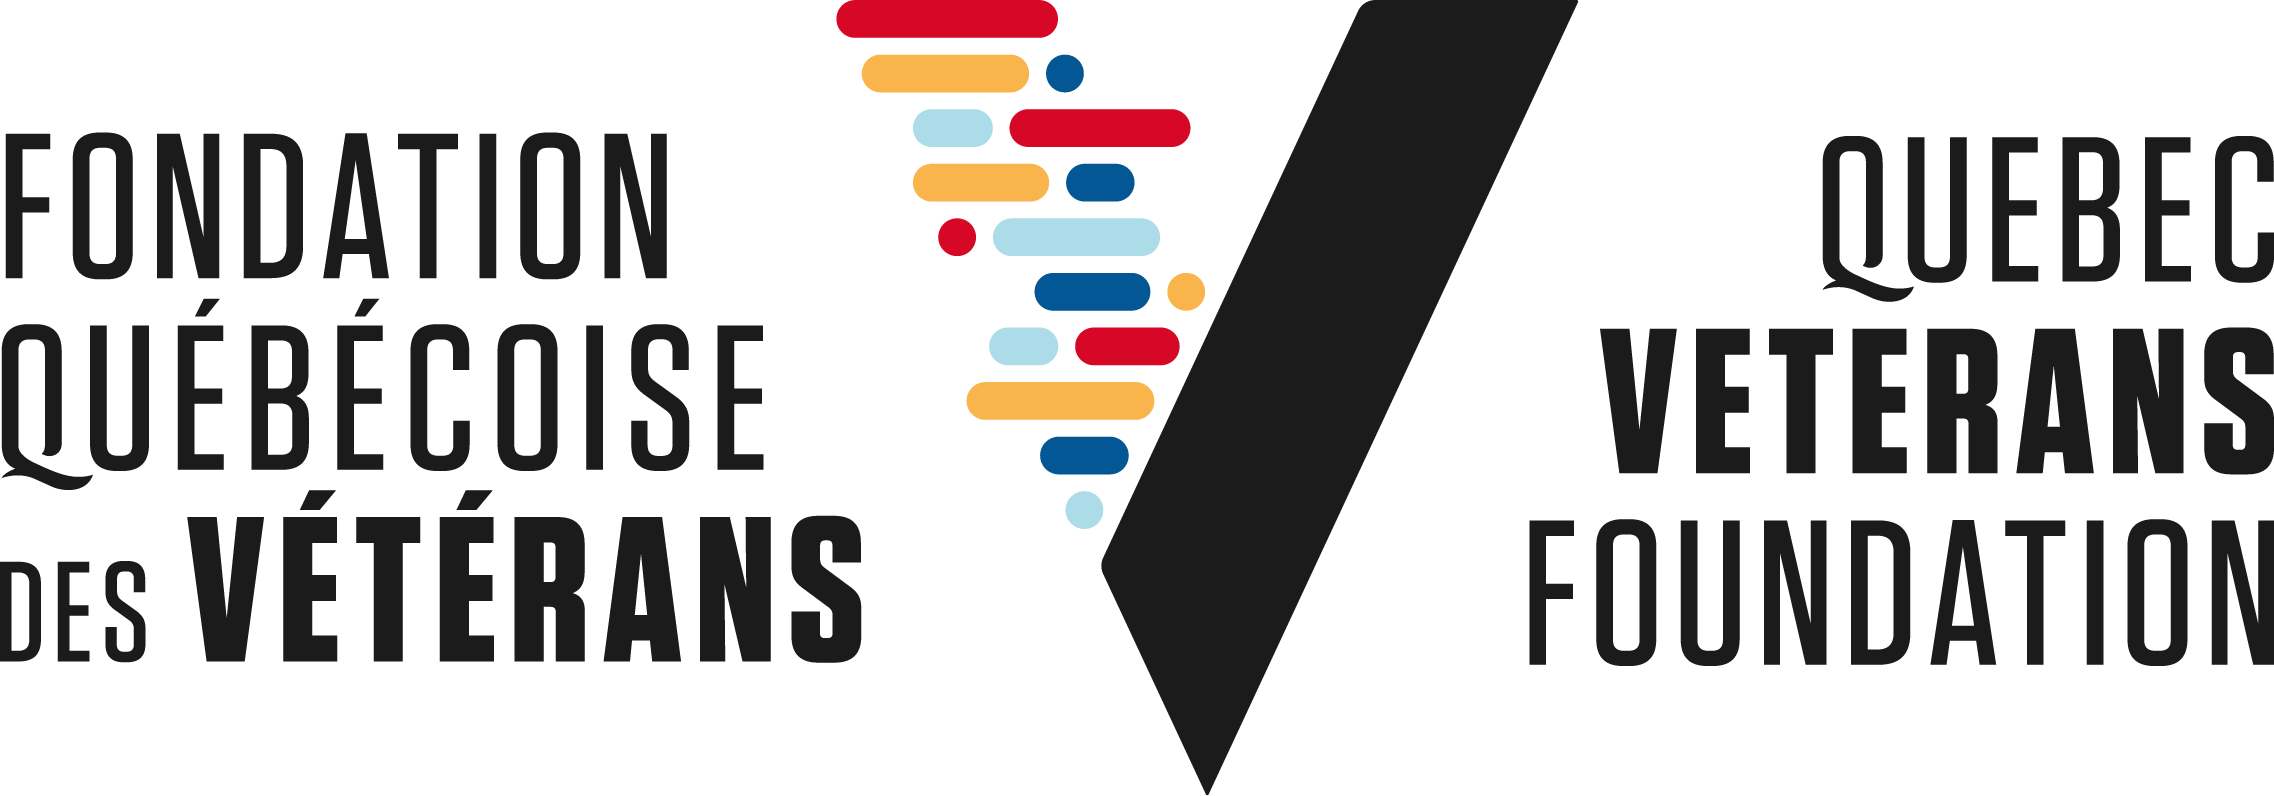 Fondation québécoise des Vétérans logo